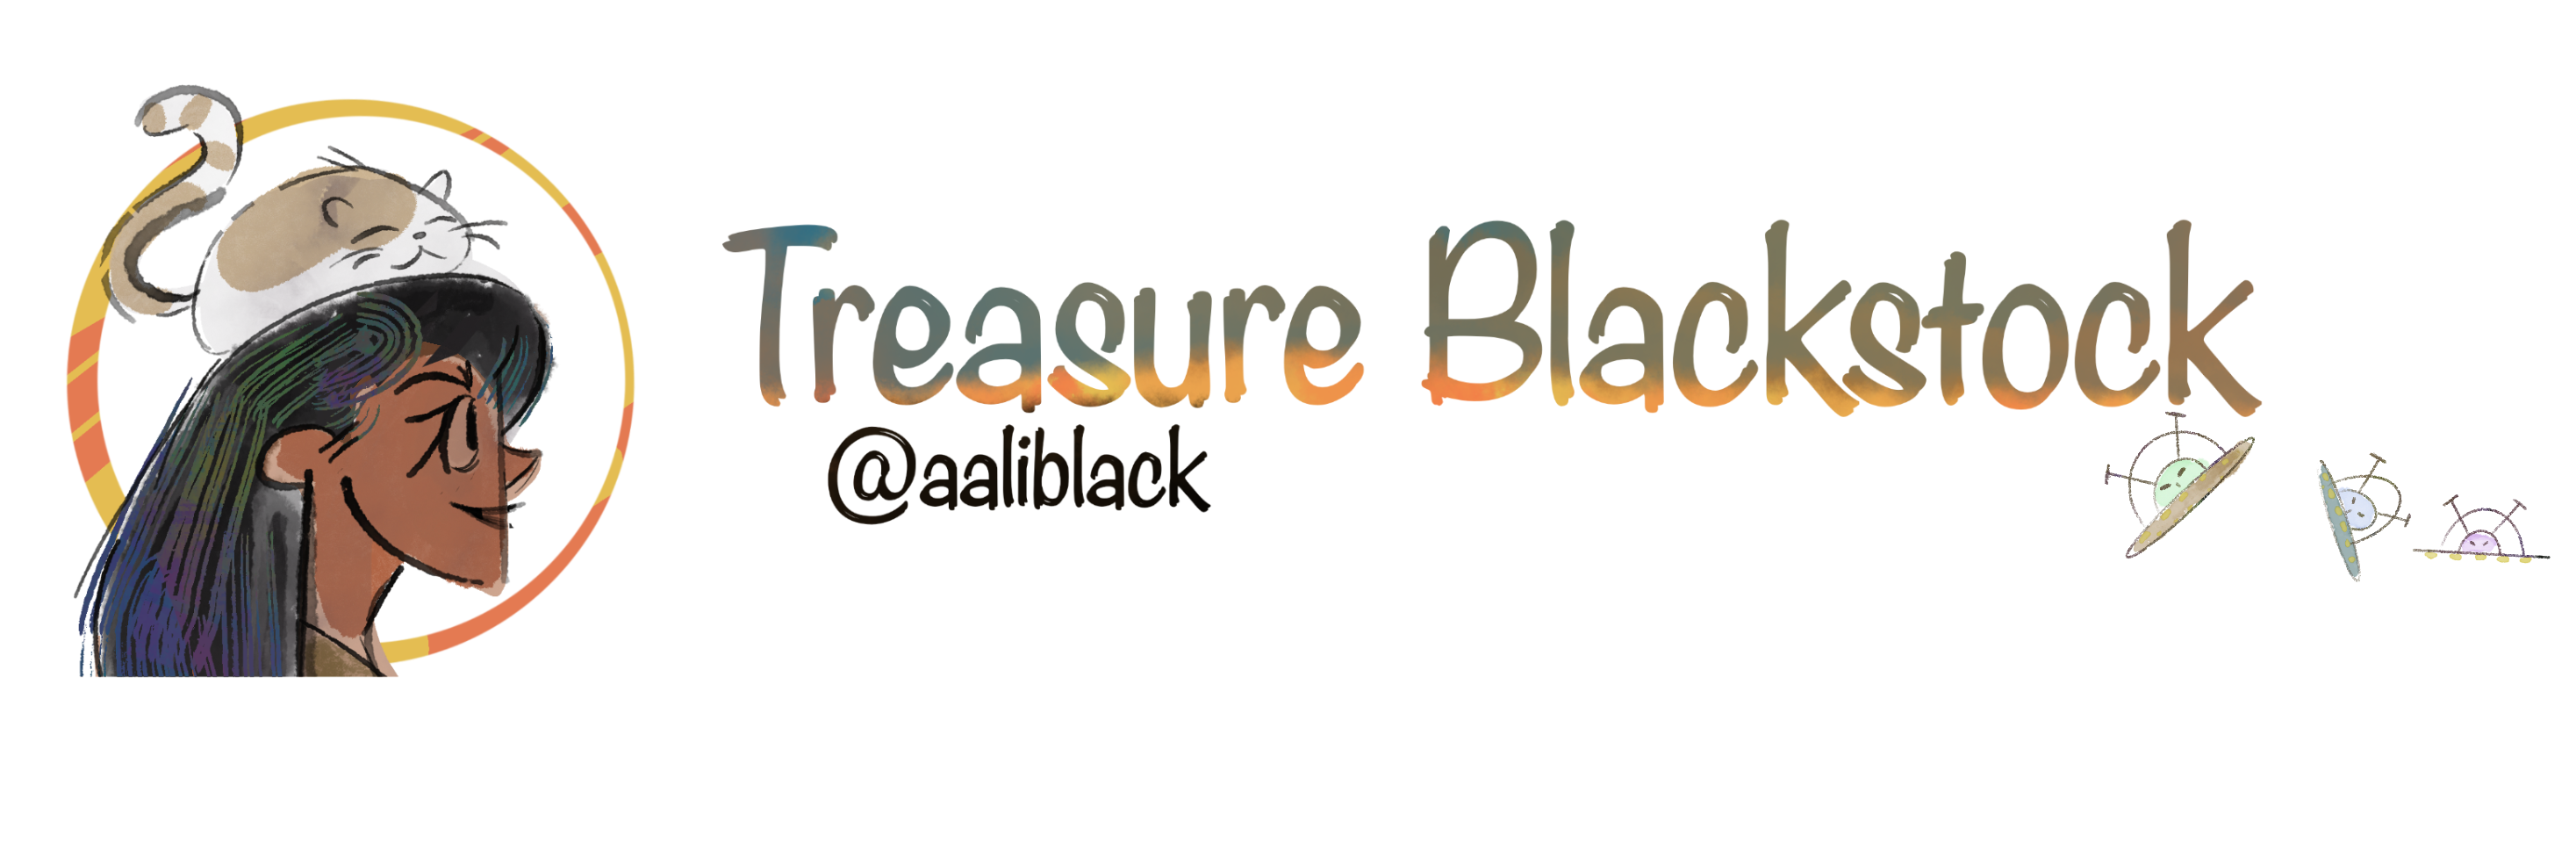 Treasure Blackstock